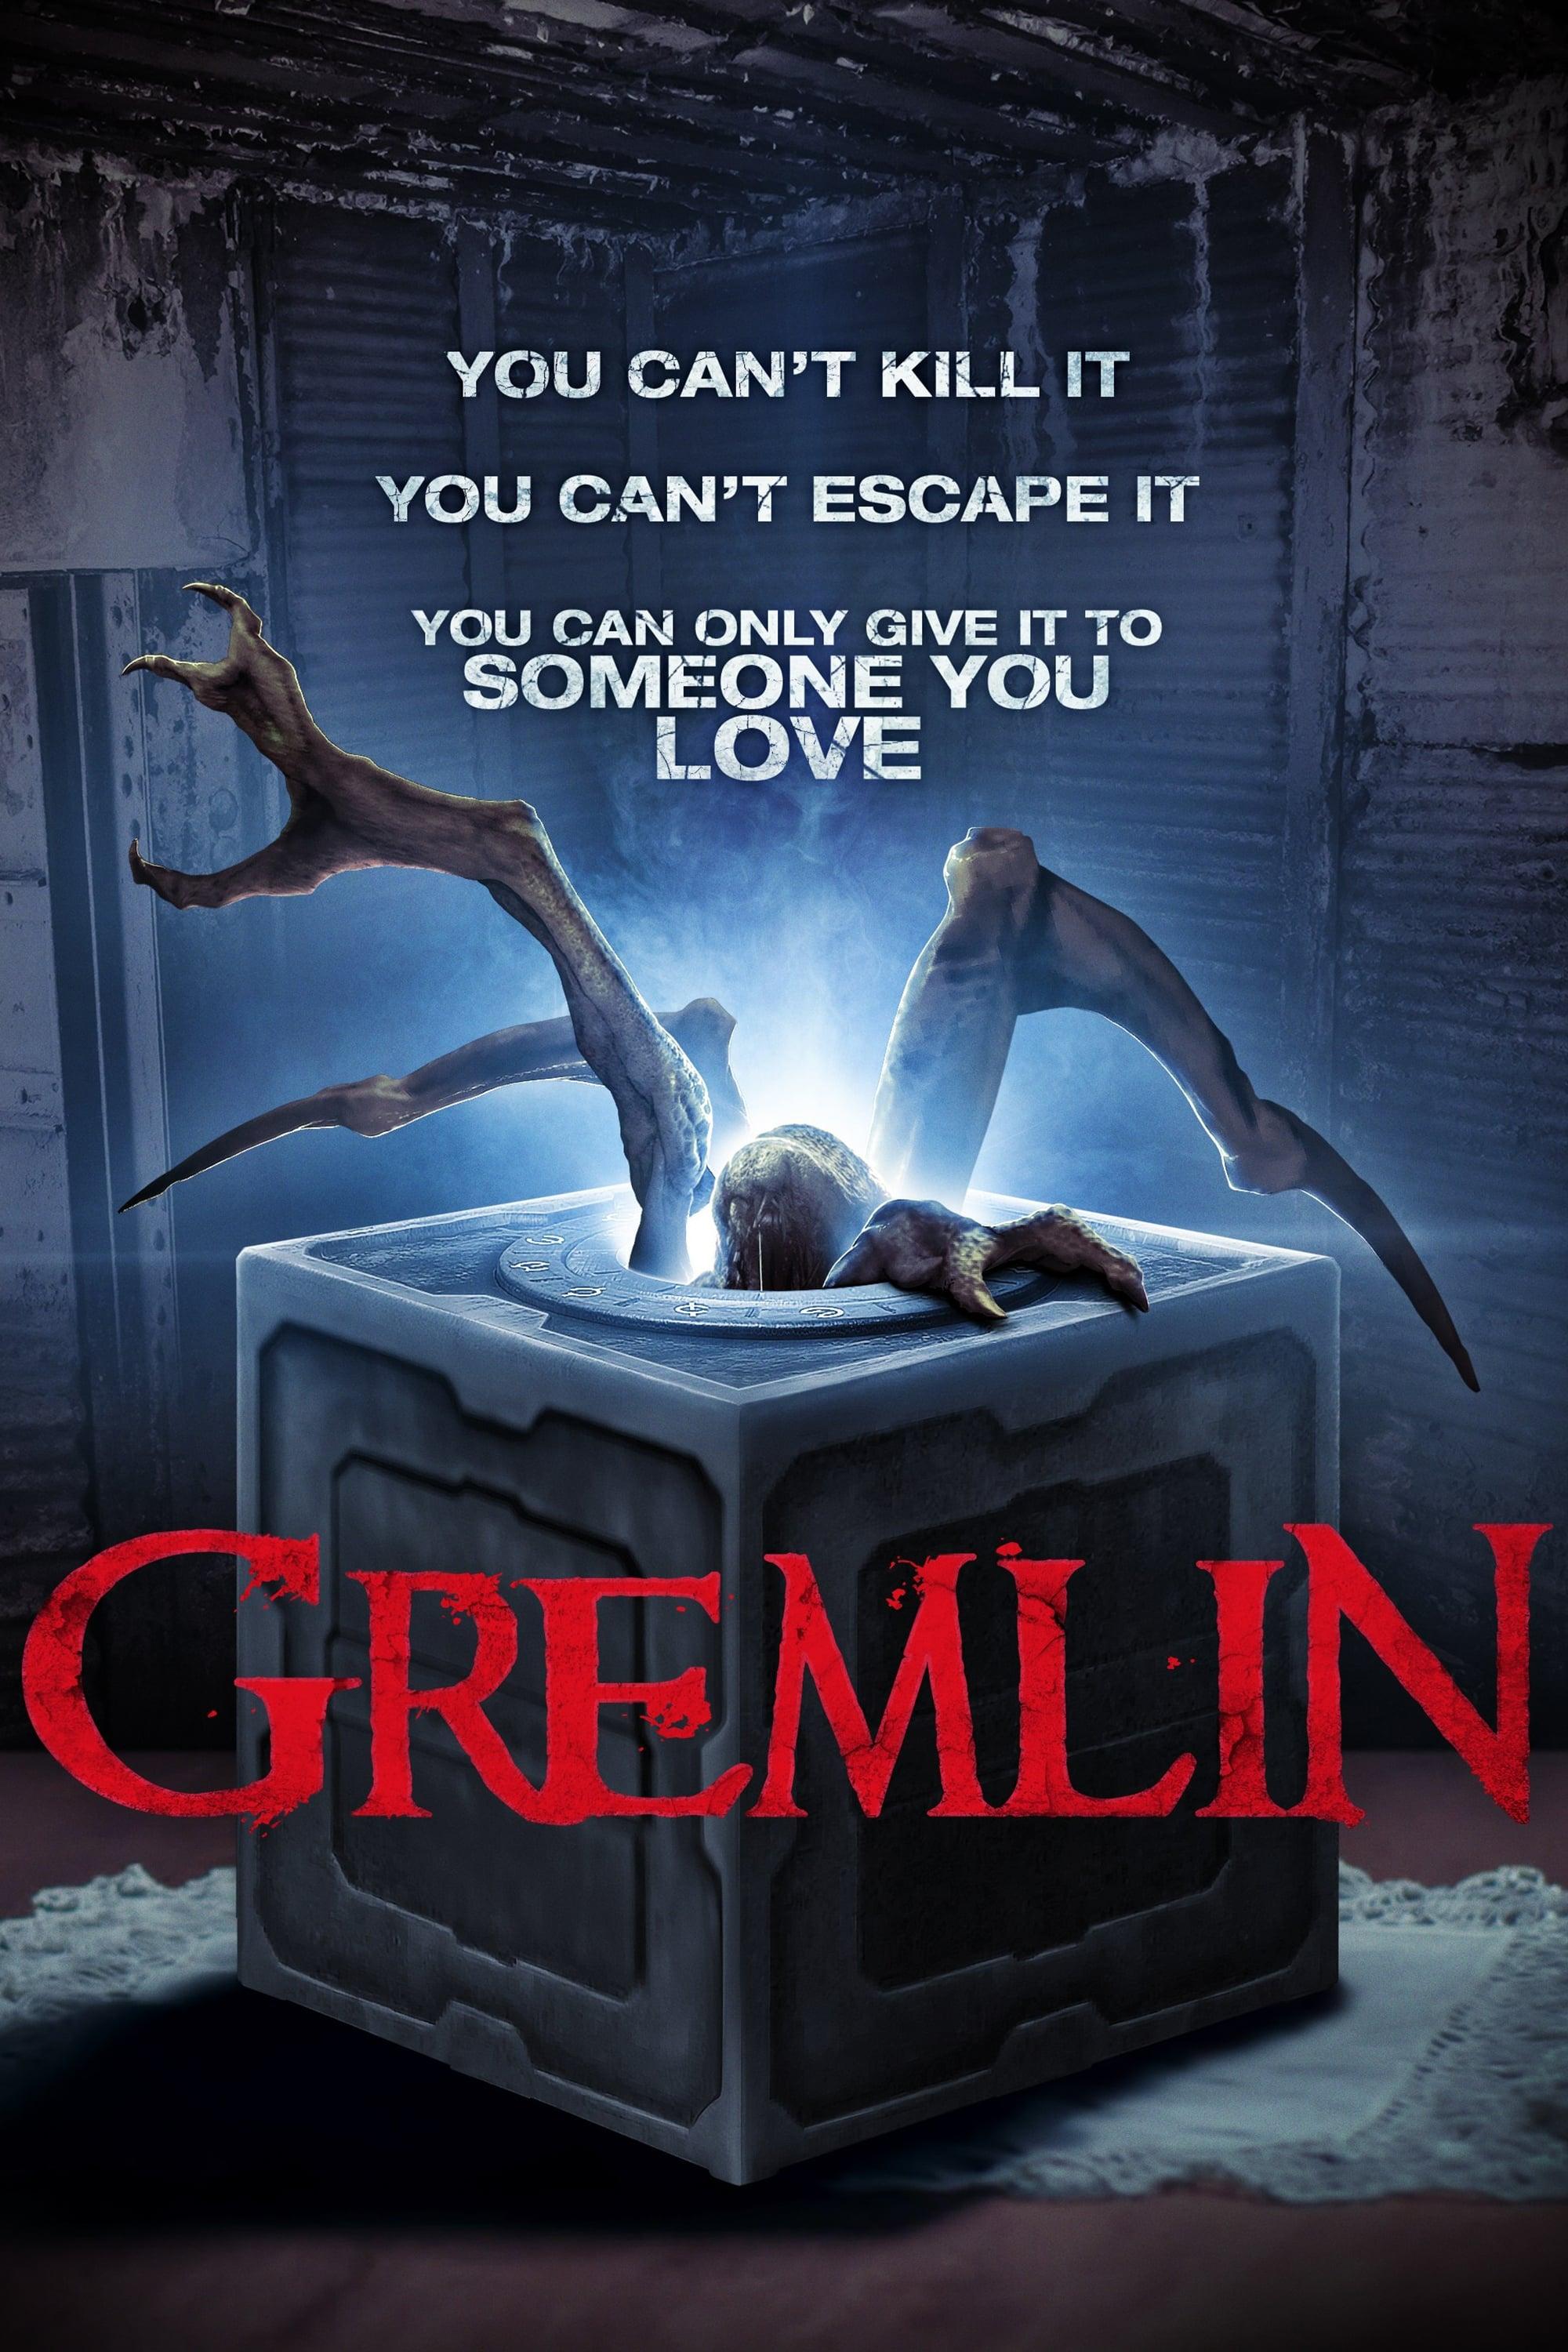 Gremlin poster